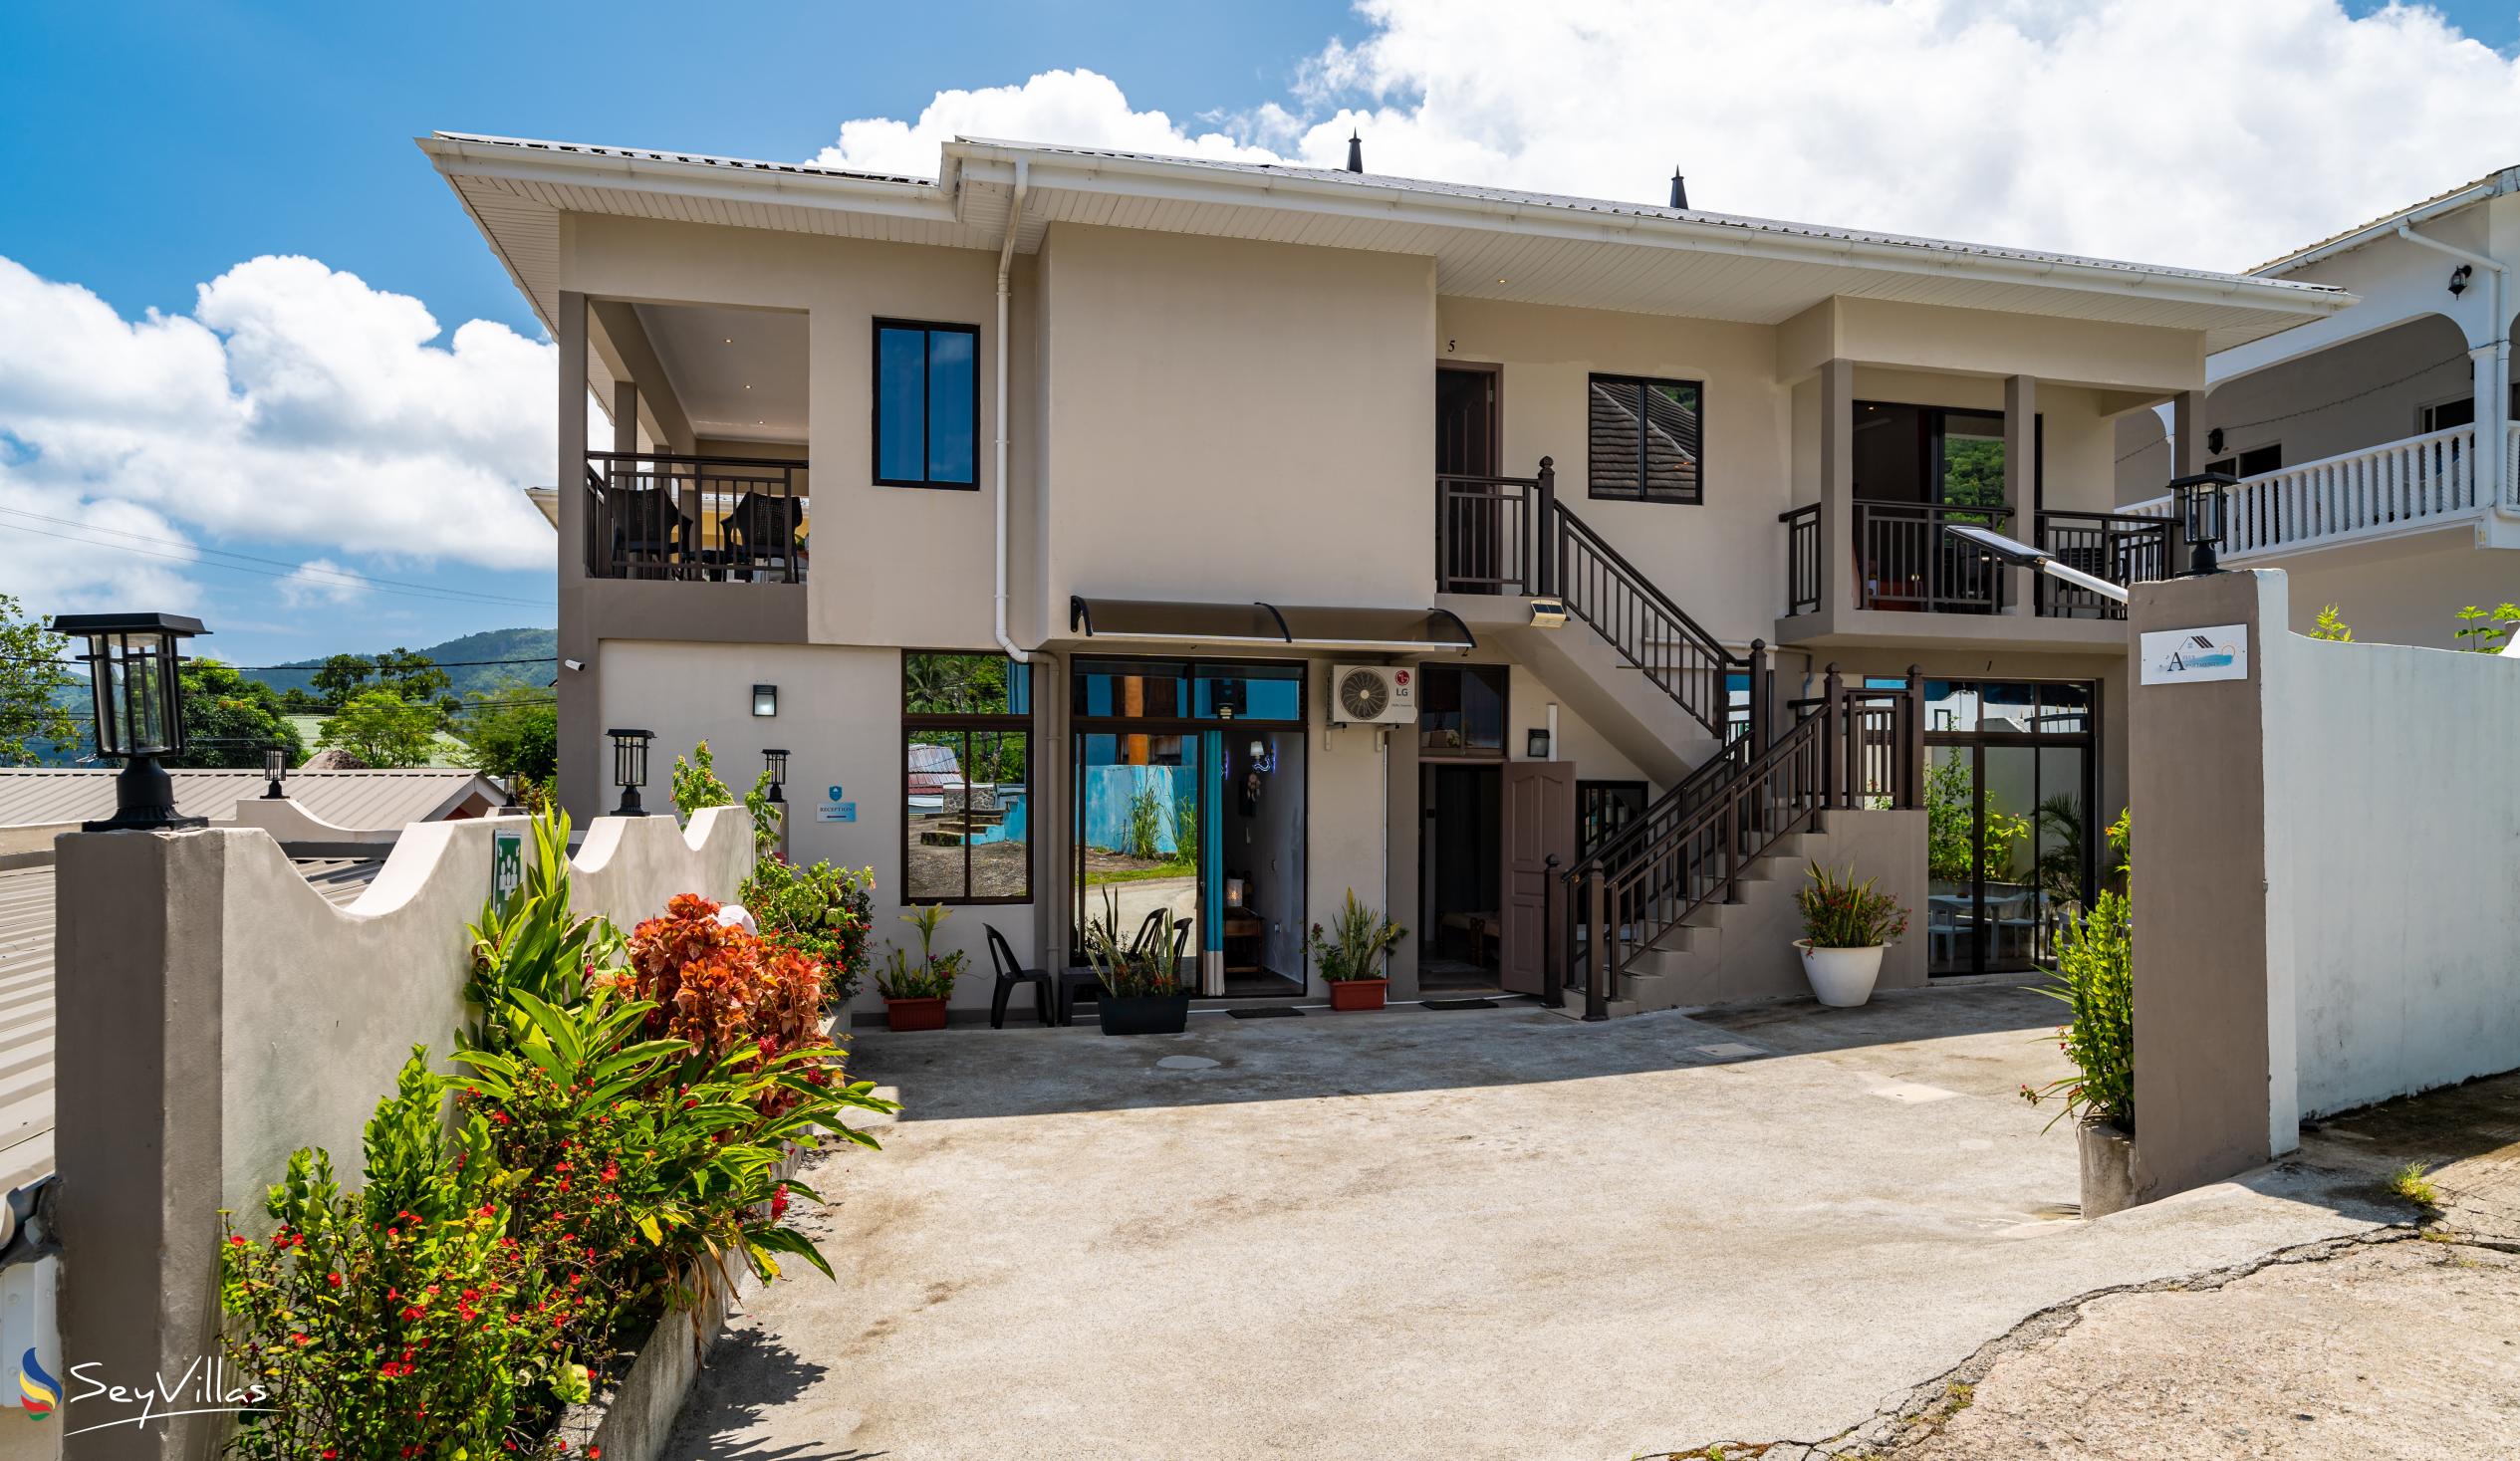 Foto 10: Azia's Apartments - Aussenbereich - Mahé (Seychellen)